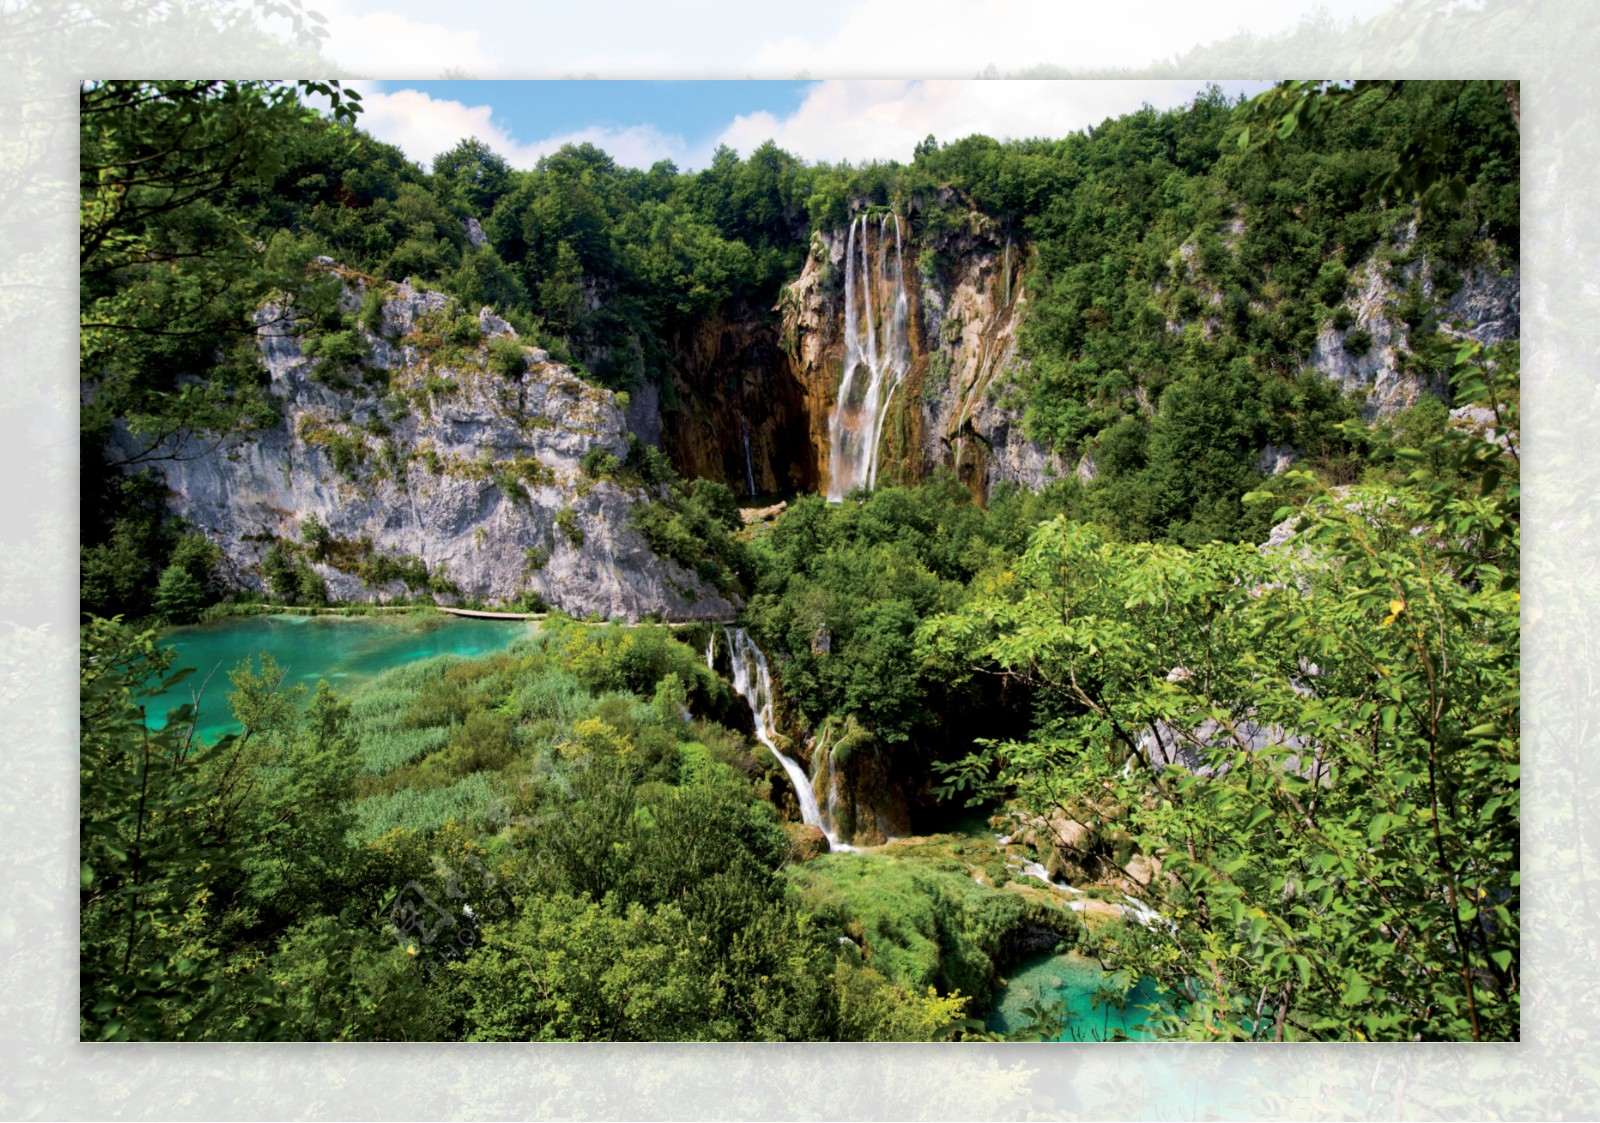 奇石碧海瀑布水流自然景观图片图片